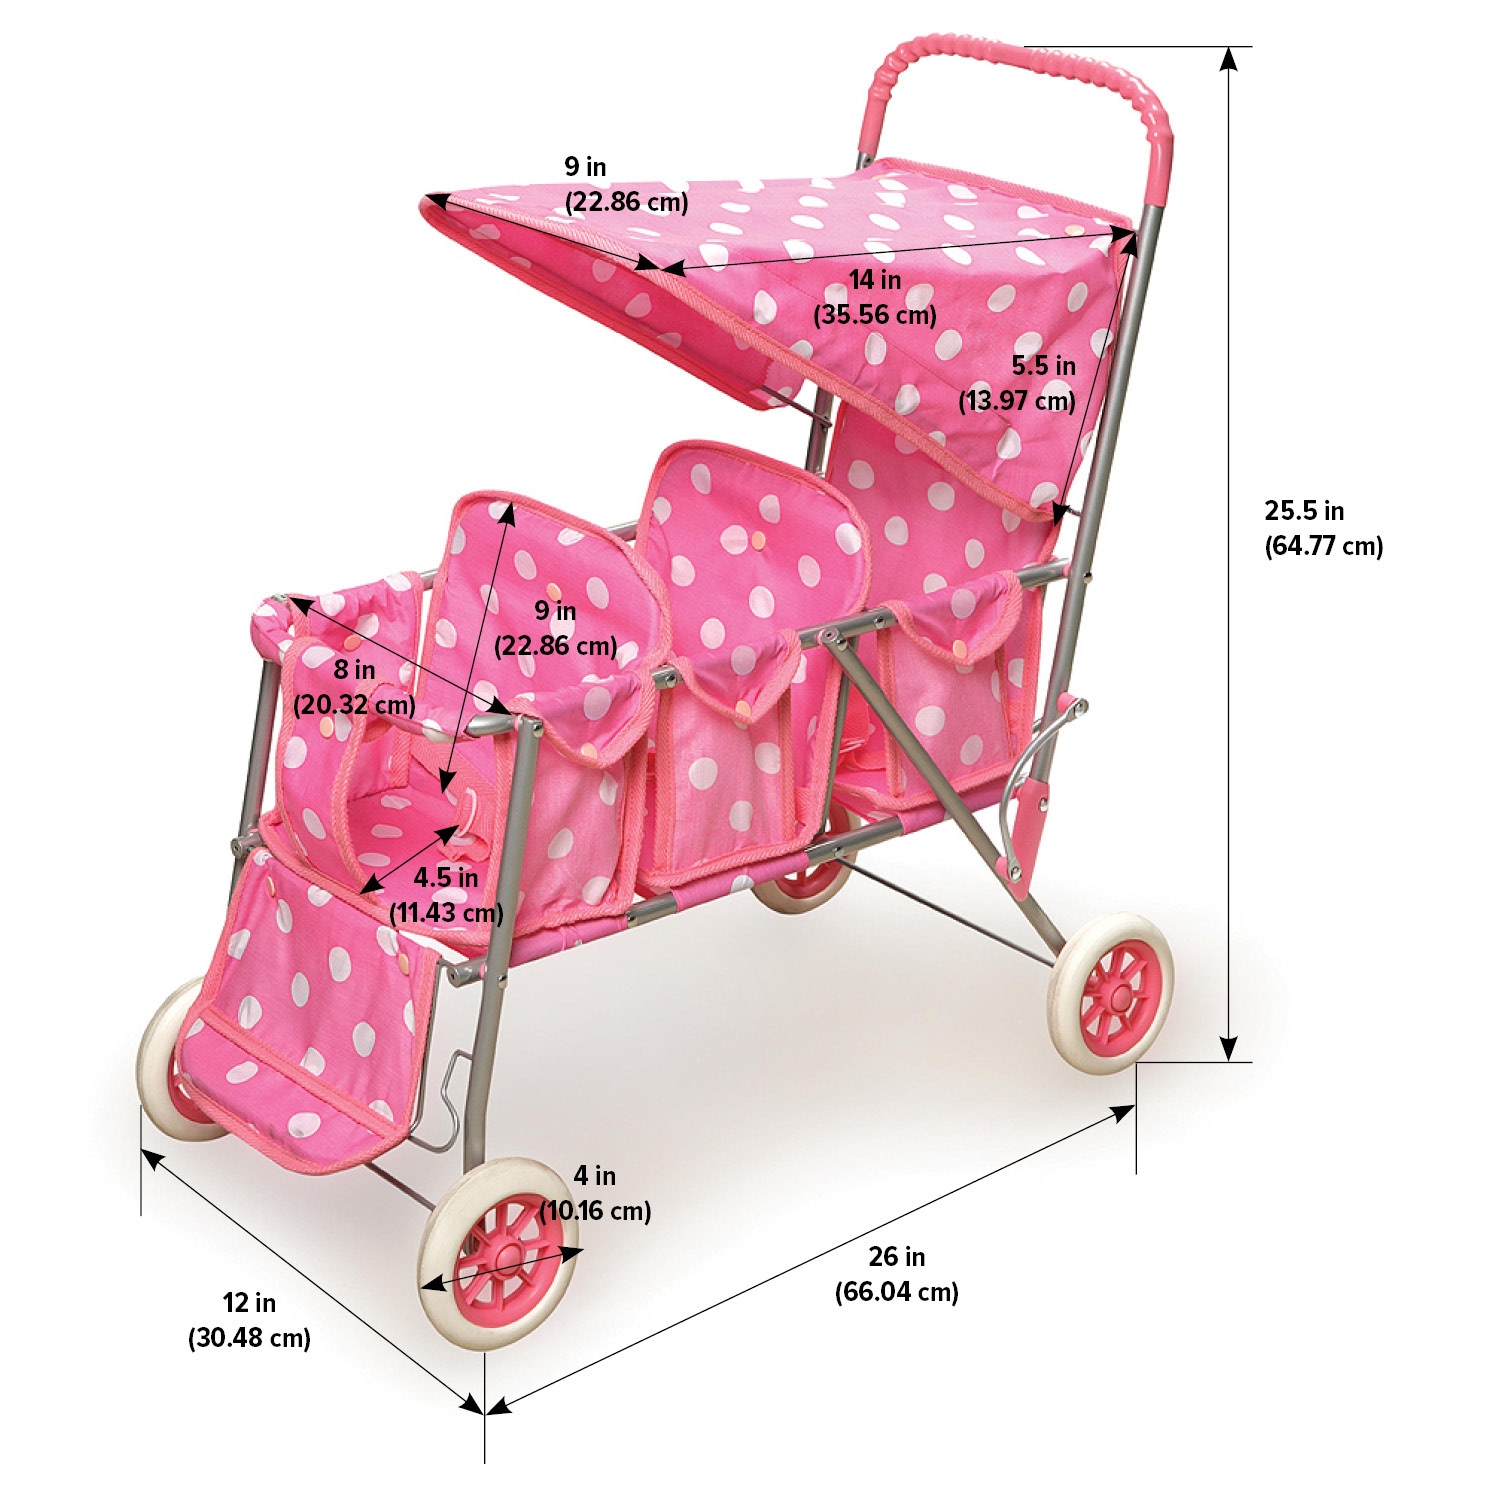 Badger Basket Folding Triple Doll Stroller - Pink/Polka Dots - image 5 of 7